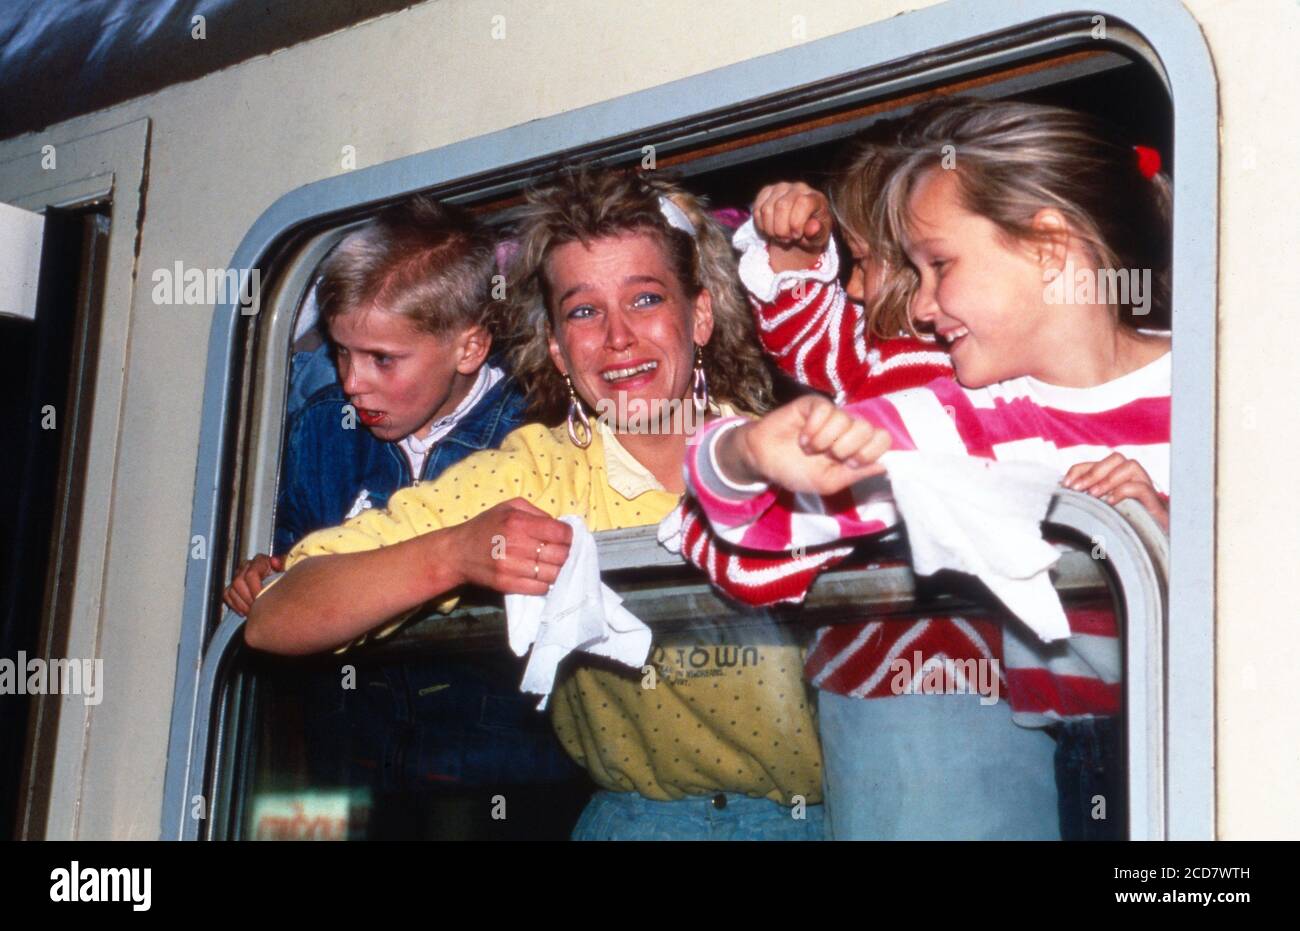 Bildreportage: Direkt nach der Öffnung der Grenze der DDR treffen vor Glück weinende Flüchtlinge in einem überfüllten Zug aus Warschau im Bahnhof in Helmstedt am 2. Oktober 1989 ein. Stock Photo